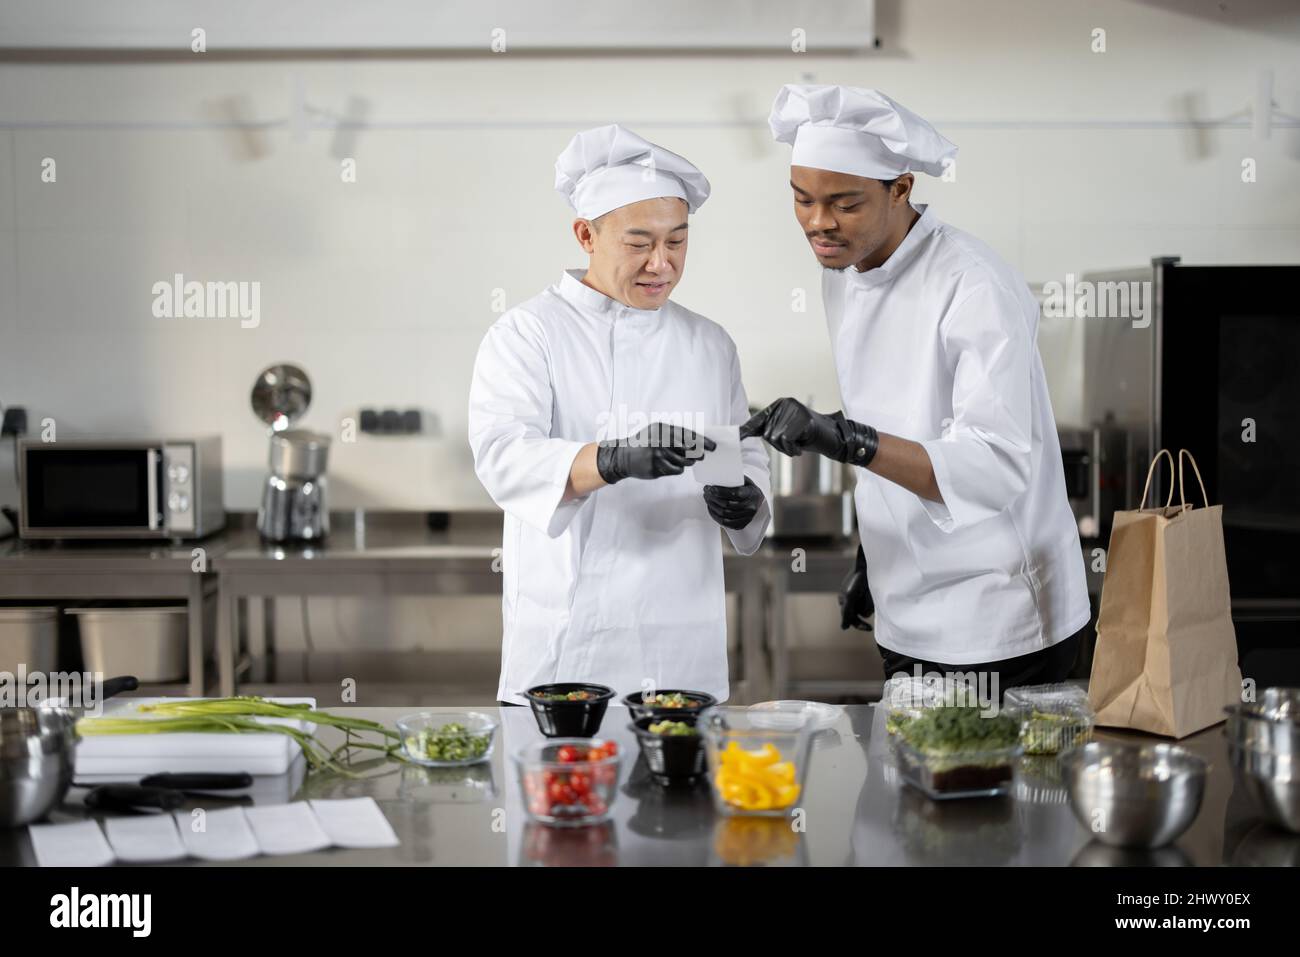 Les chefs asiatiques et latins lisent la commande imprimée tout en cuisinant des repas dans une cuisine professionnelle. Deux chefs de différentes nationalités cuisinent ensemble dans un restaurant Banque D'Images